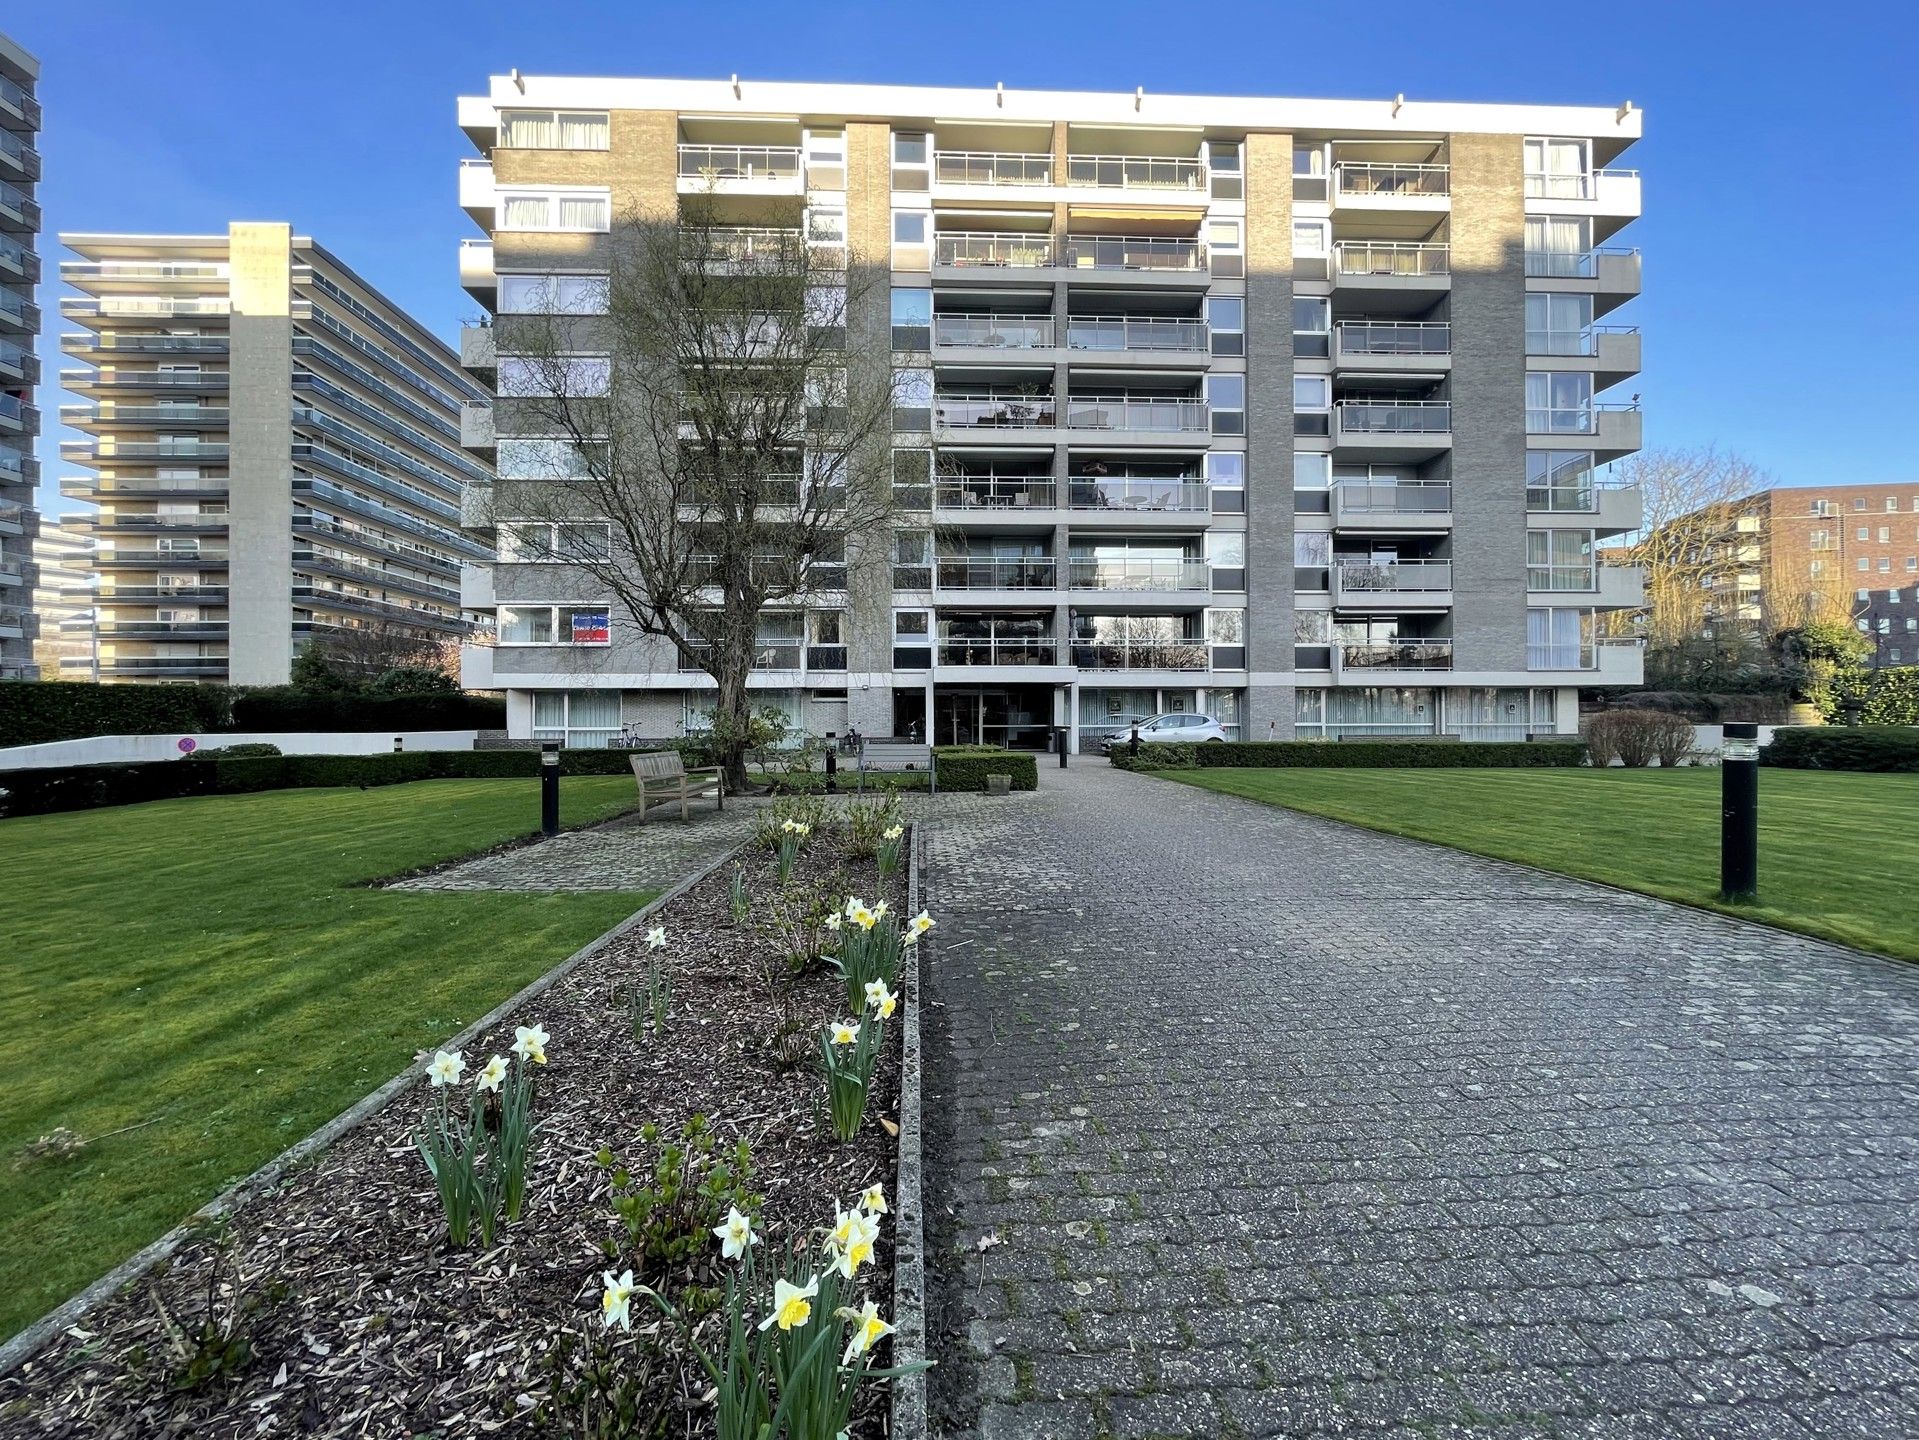 Appartement te koop Jos Ratinckxstraat 4/29 - 2600 Antwerpen